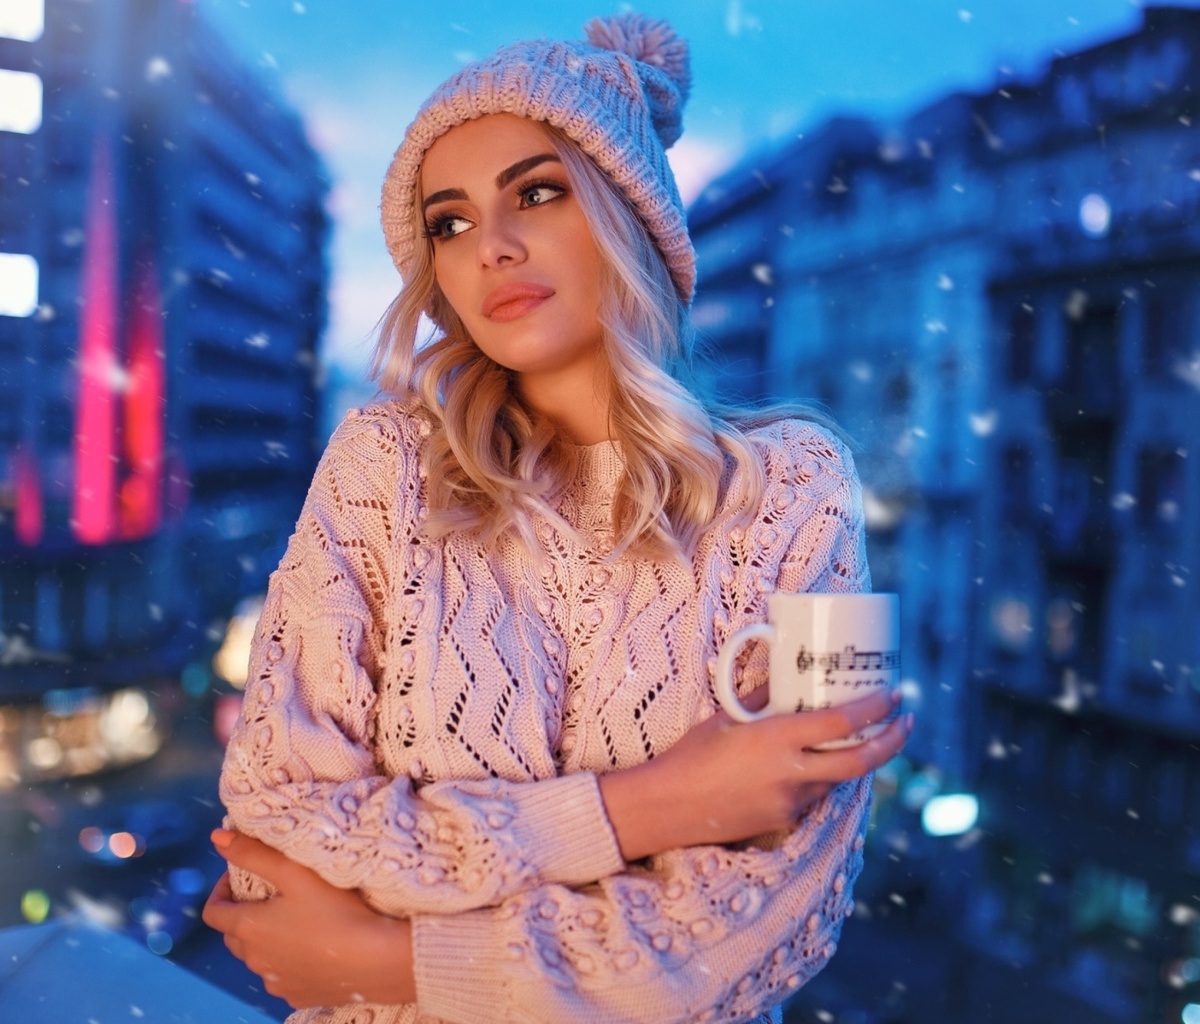 Winter stylish woman screenshot #1 1200x1024